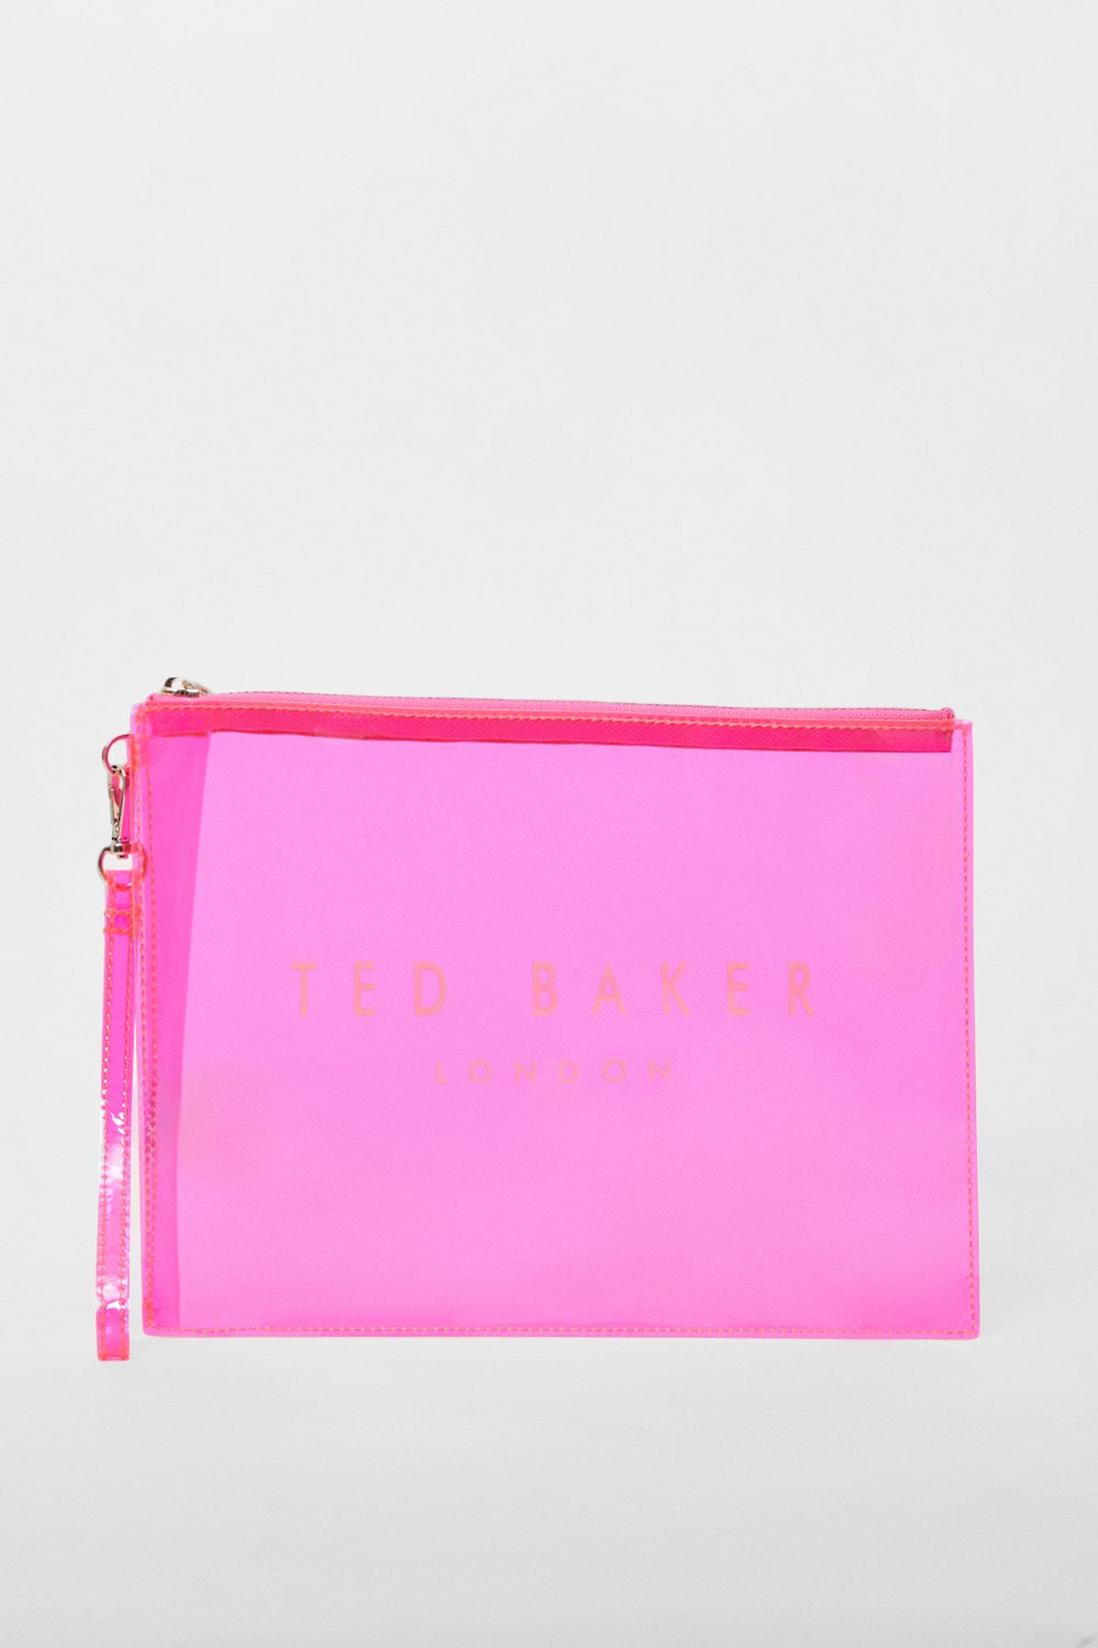 شيكون حقيبة باوتش صغيرة شفافة باللون الوردي الفاقع